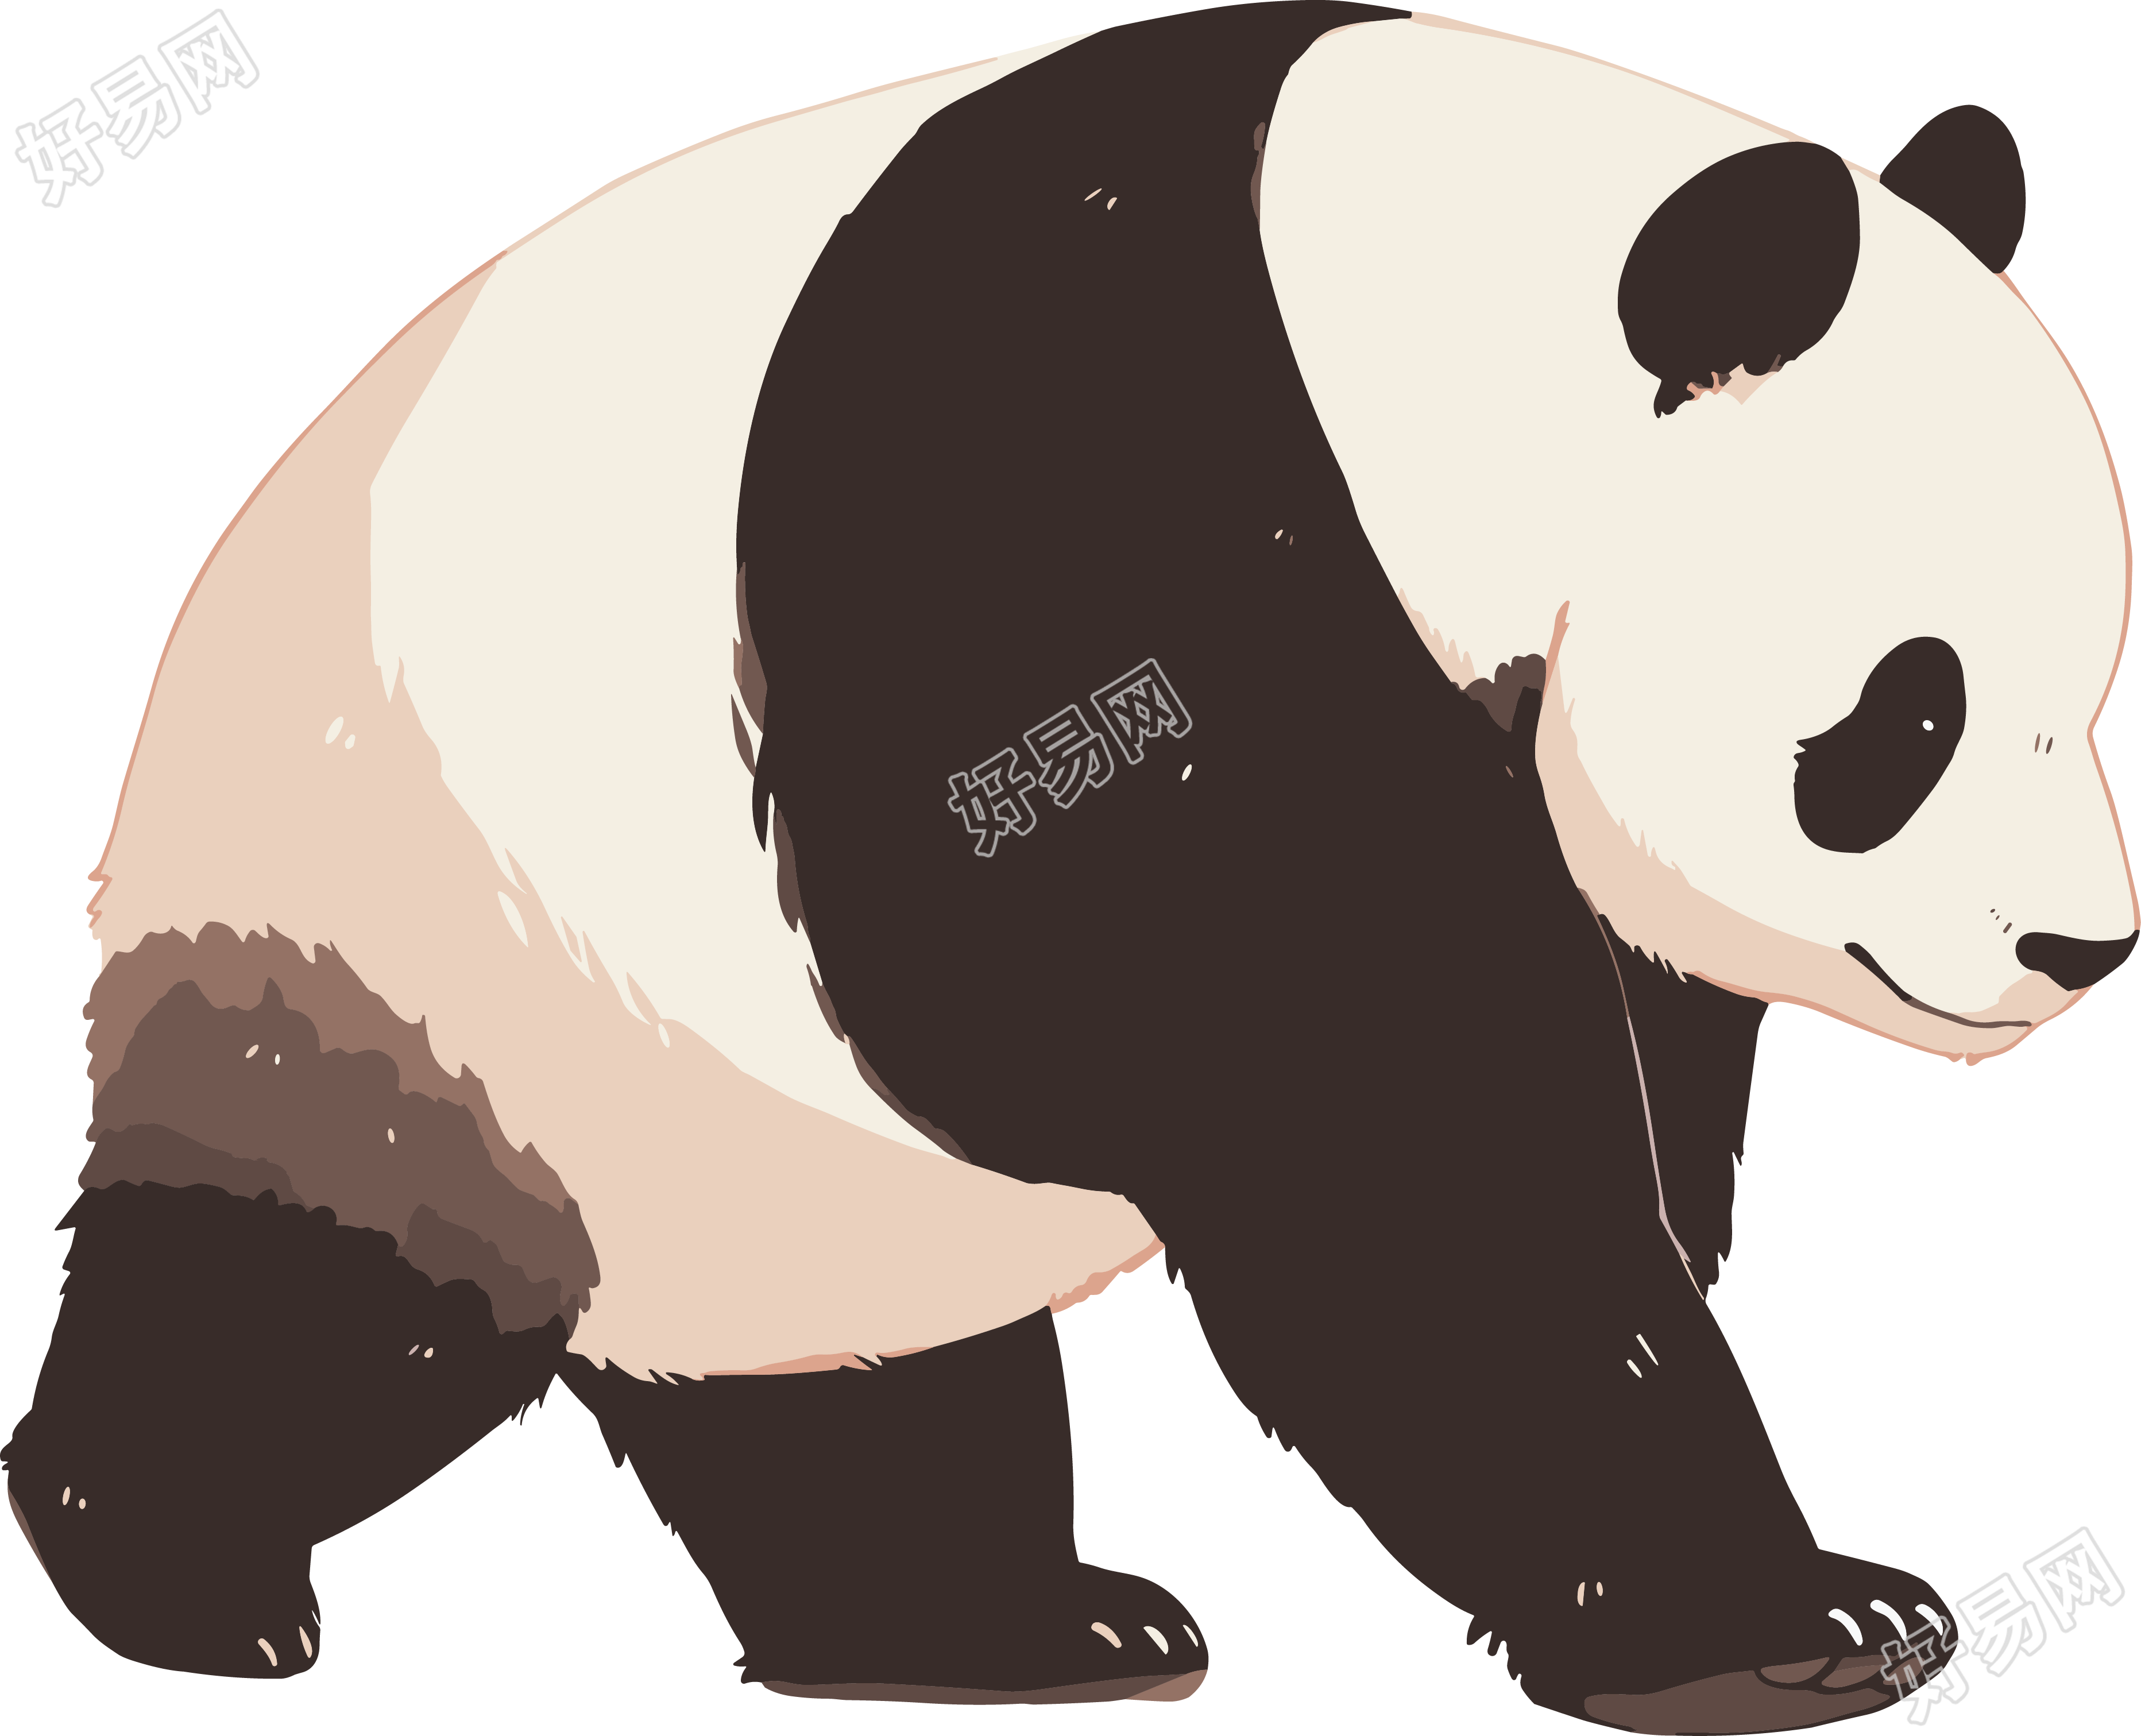 大熊猫可爱图案素材